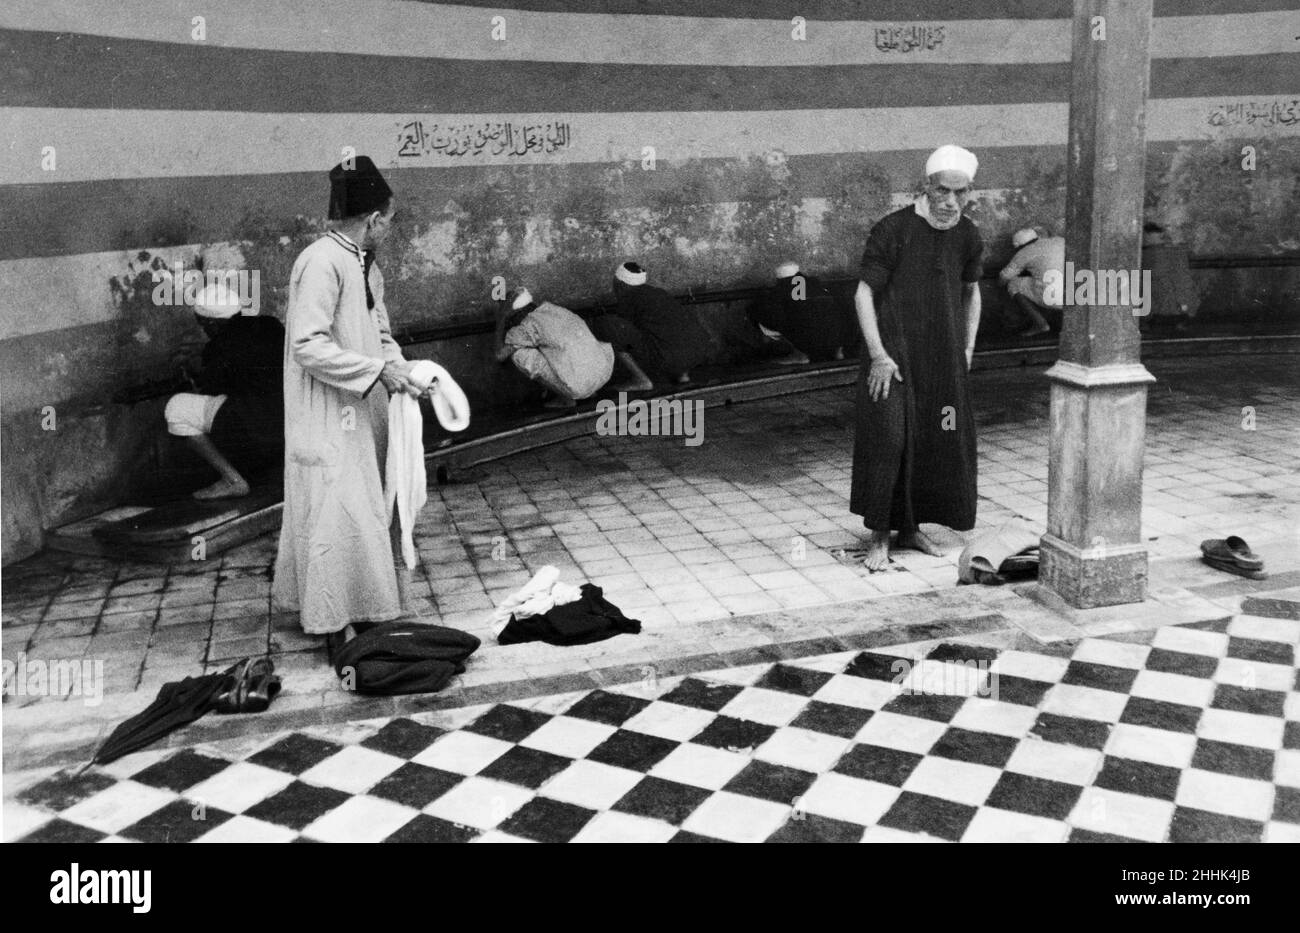 Le preghiere del venerdì a Port Said, Eygpt. La nostra foto mostra; quelli che stanno per pregare nella Moschea Abbas, Port ha detto, passando attraverso il processo di lavaggio tre volte come stabilito dal Corano, prima di intrattenerla moschea. Giugno 1936 Foto Stock